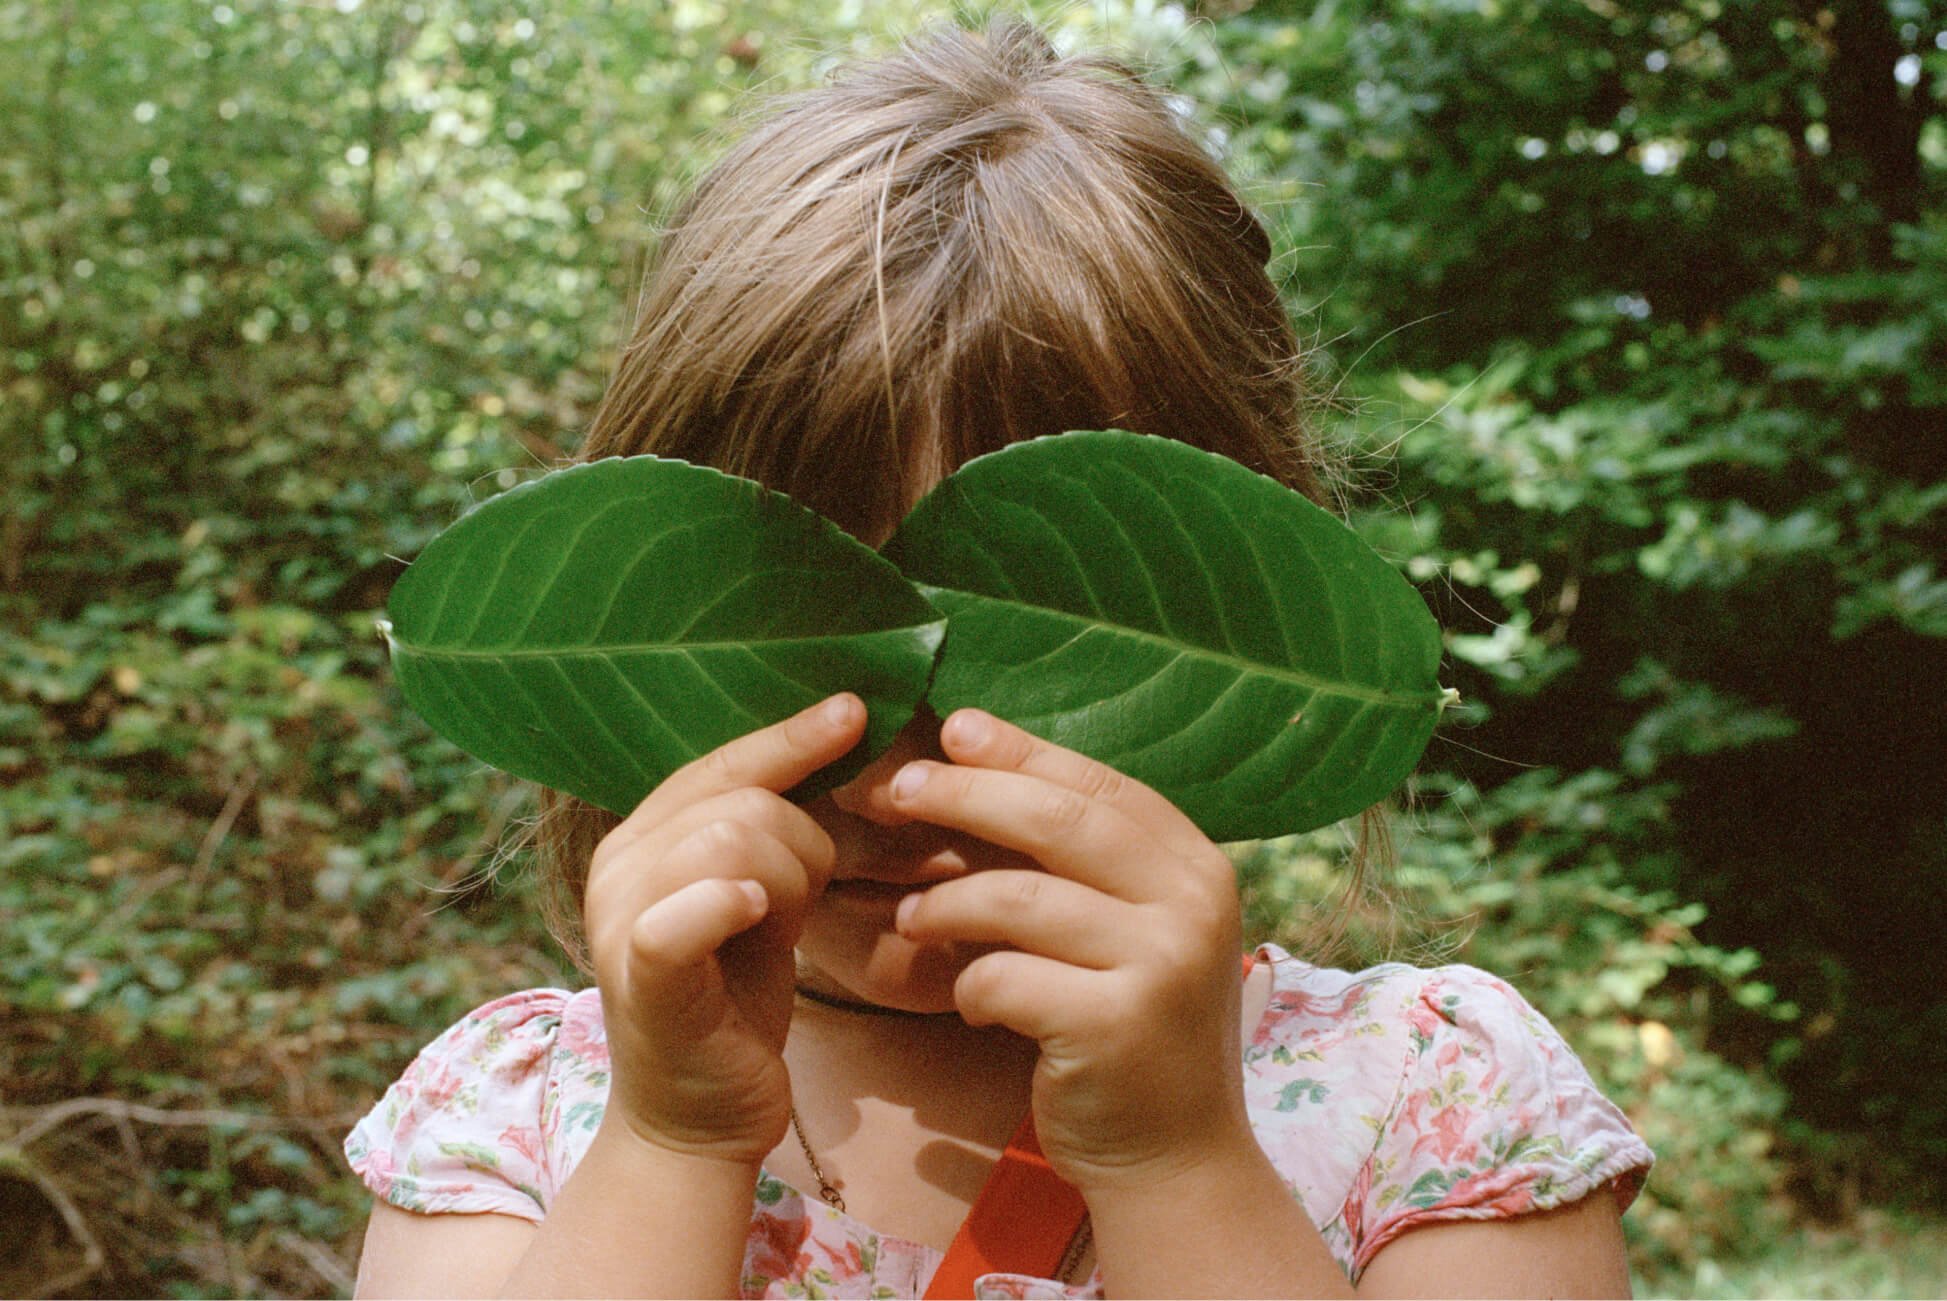 Une jeune fille dans un bois se couvre les deux yeux avec de grandes feuilles.